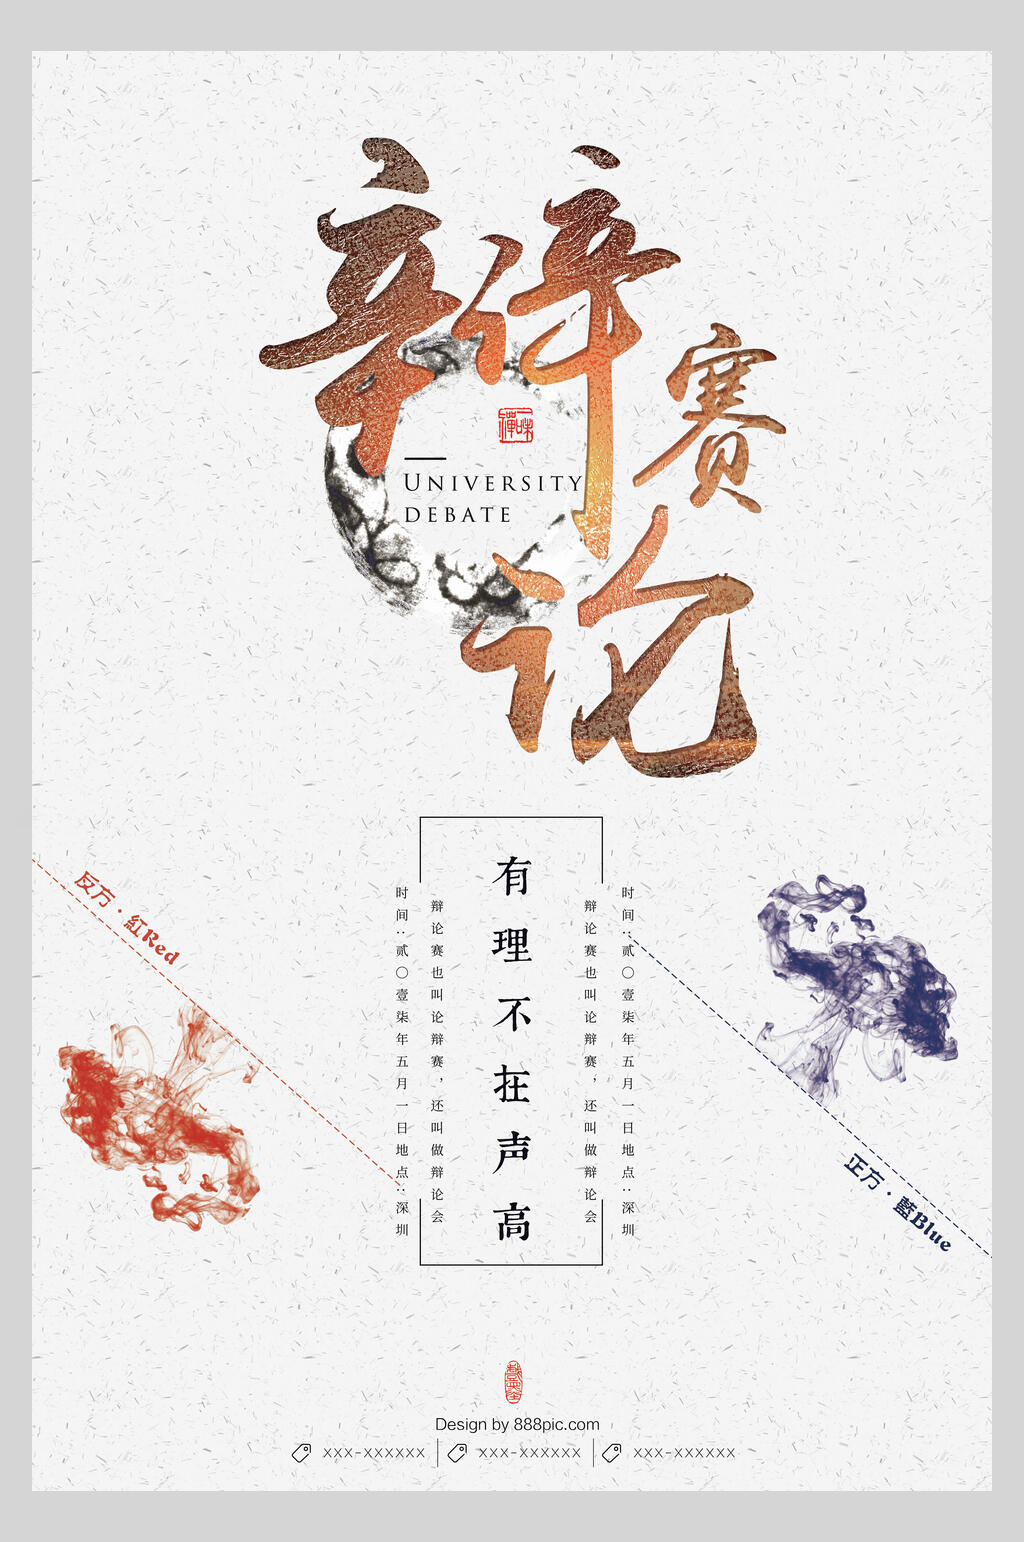 中国风辩论赛主题宣传海报素材